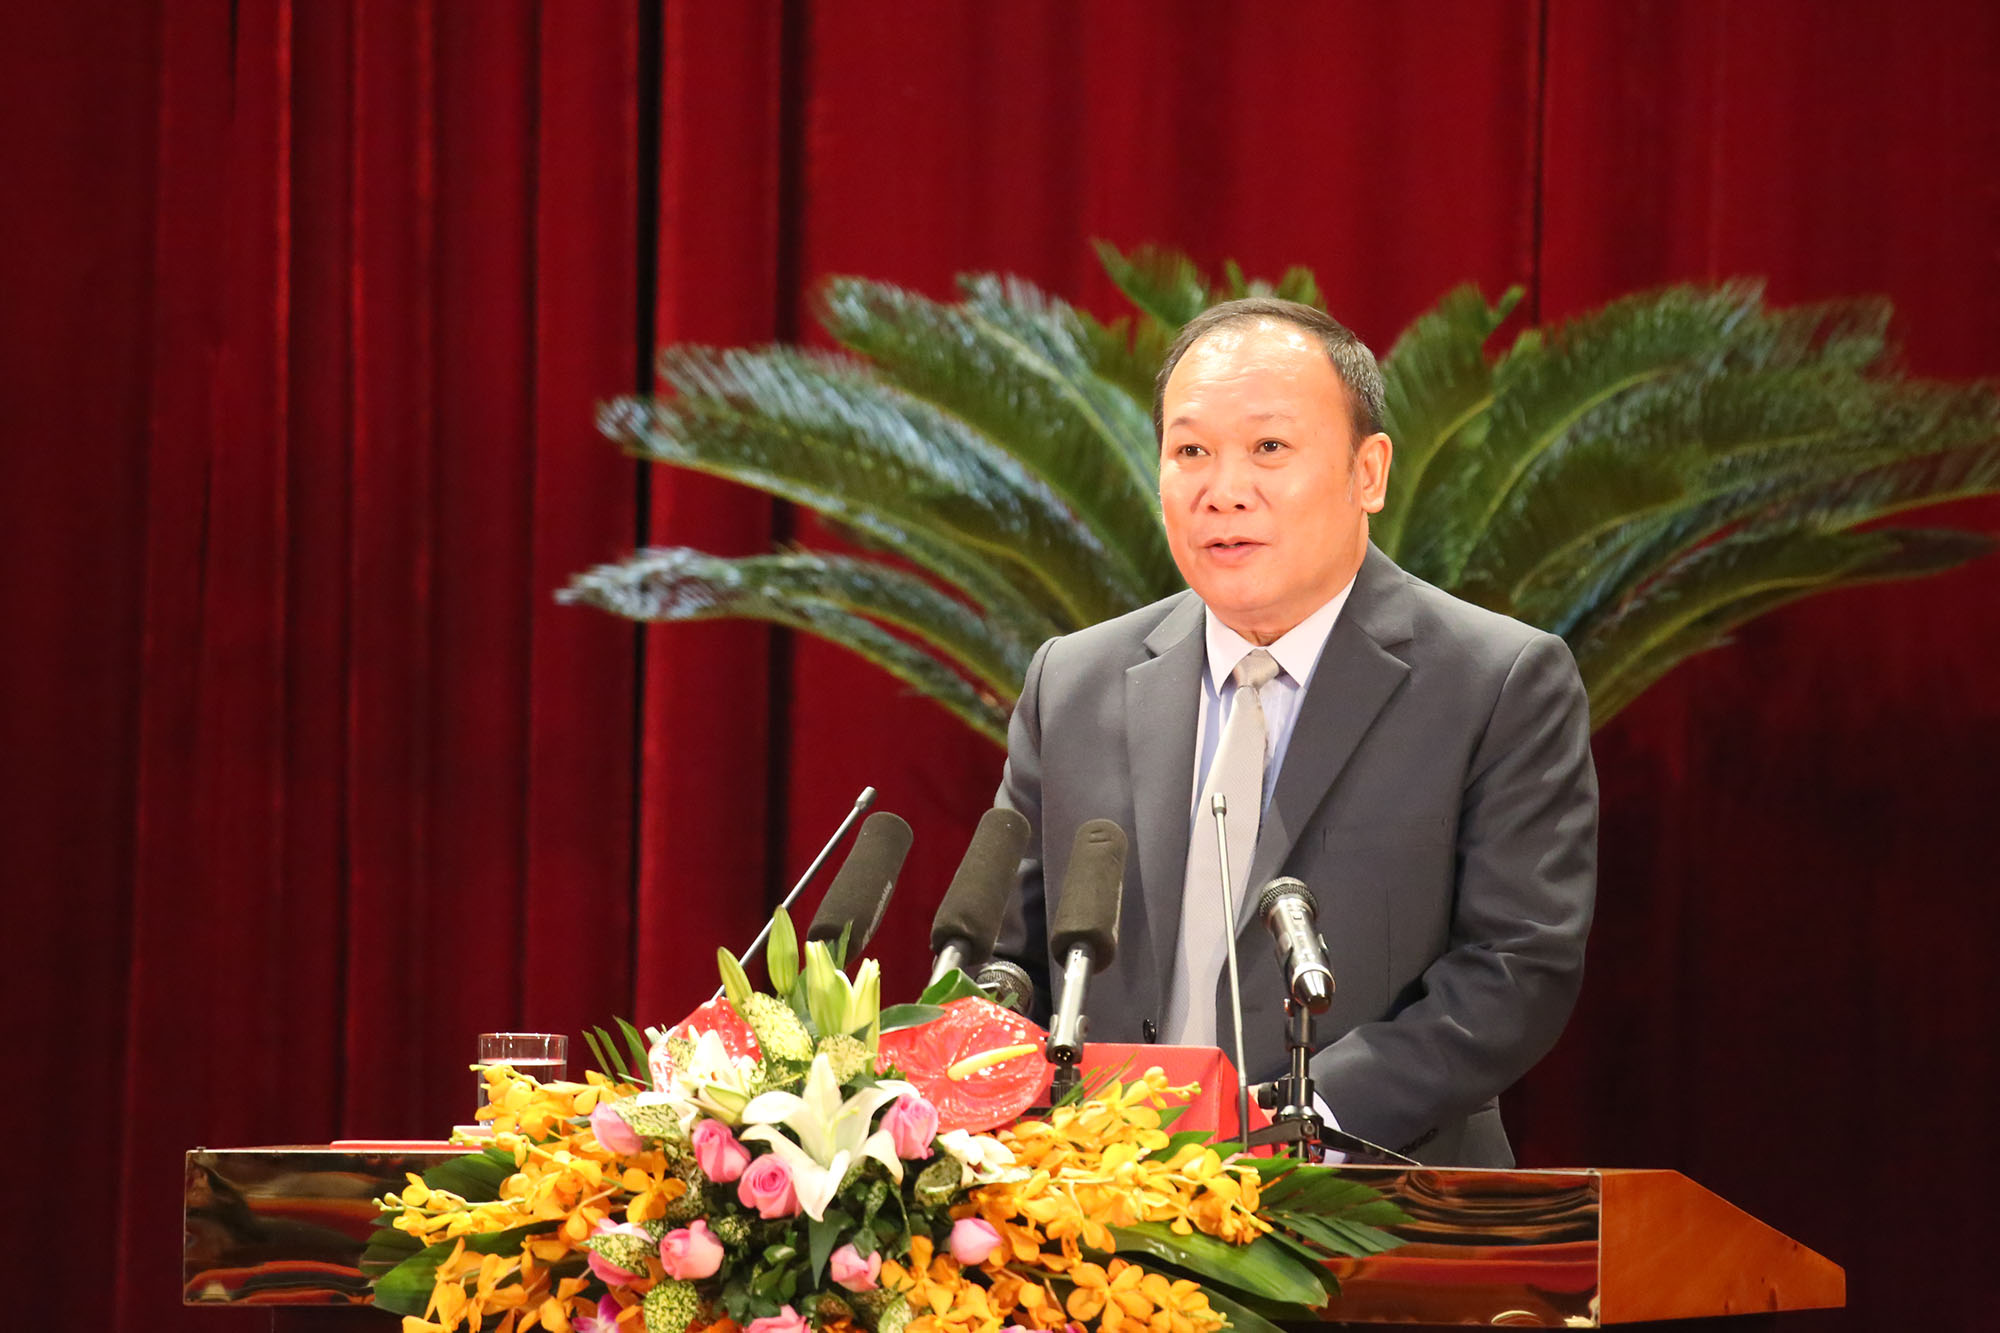 Đồng chí Nguyễn Hoài Sơn, Giám đốc Sở Lao động - Thương binh - Xã hội tỉnh, trình bày tóm tắt các tờ trình tại Kỳ họp.